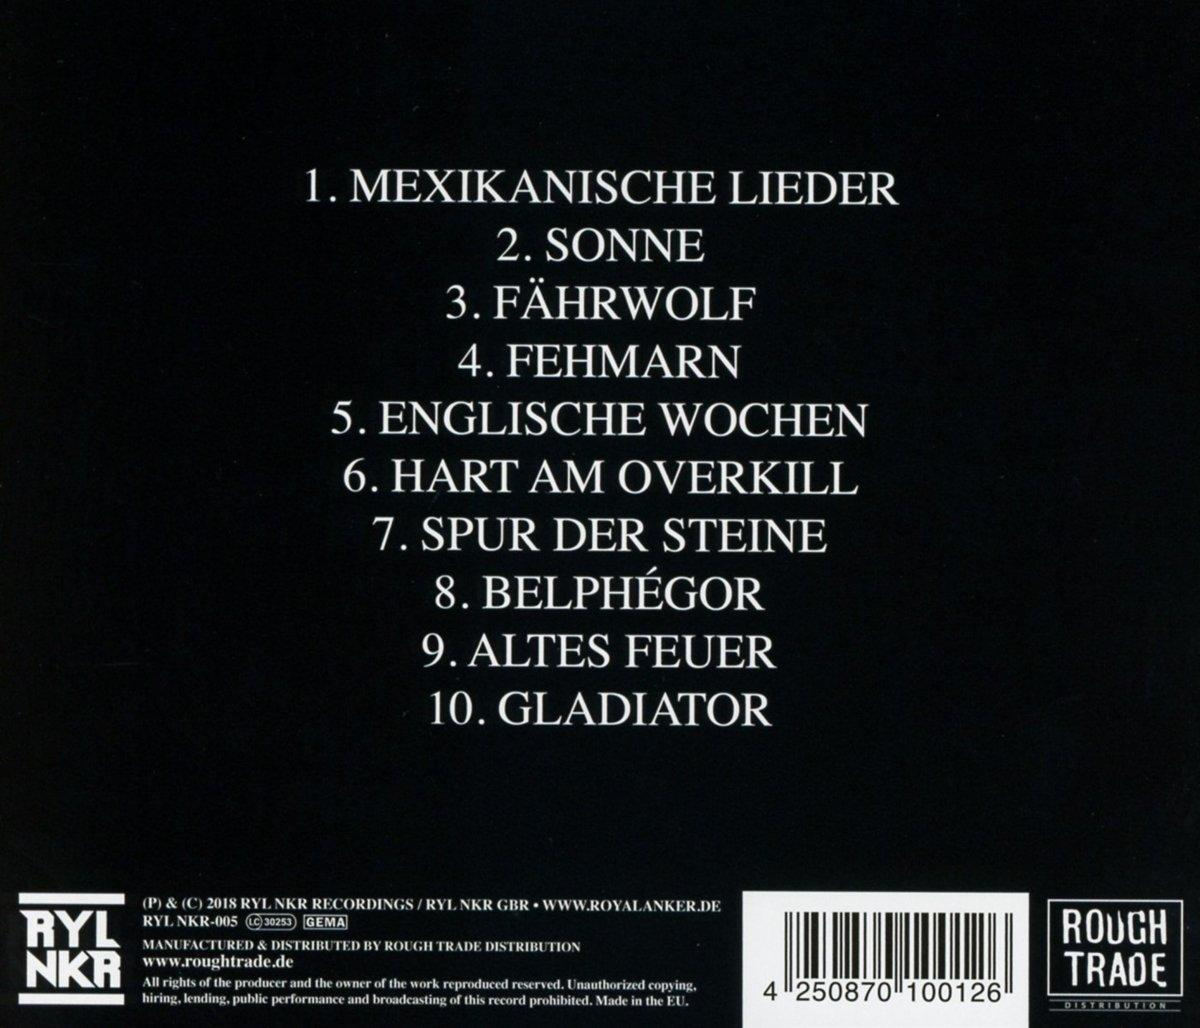 Cohen III - (CD) - Erik